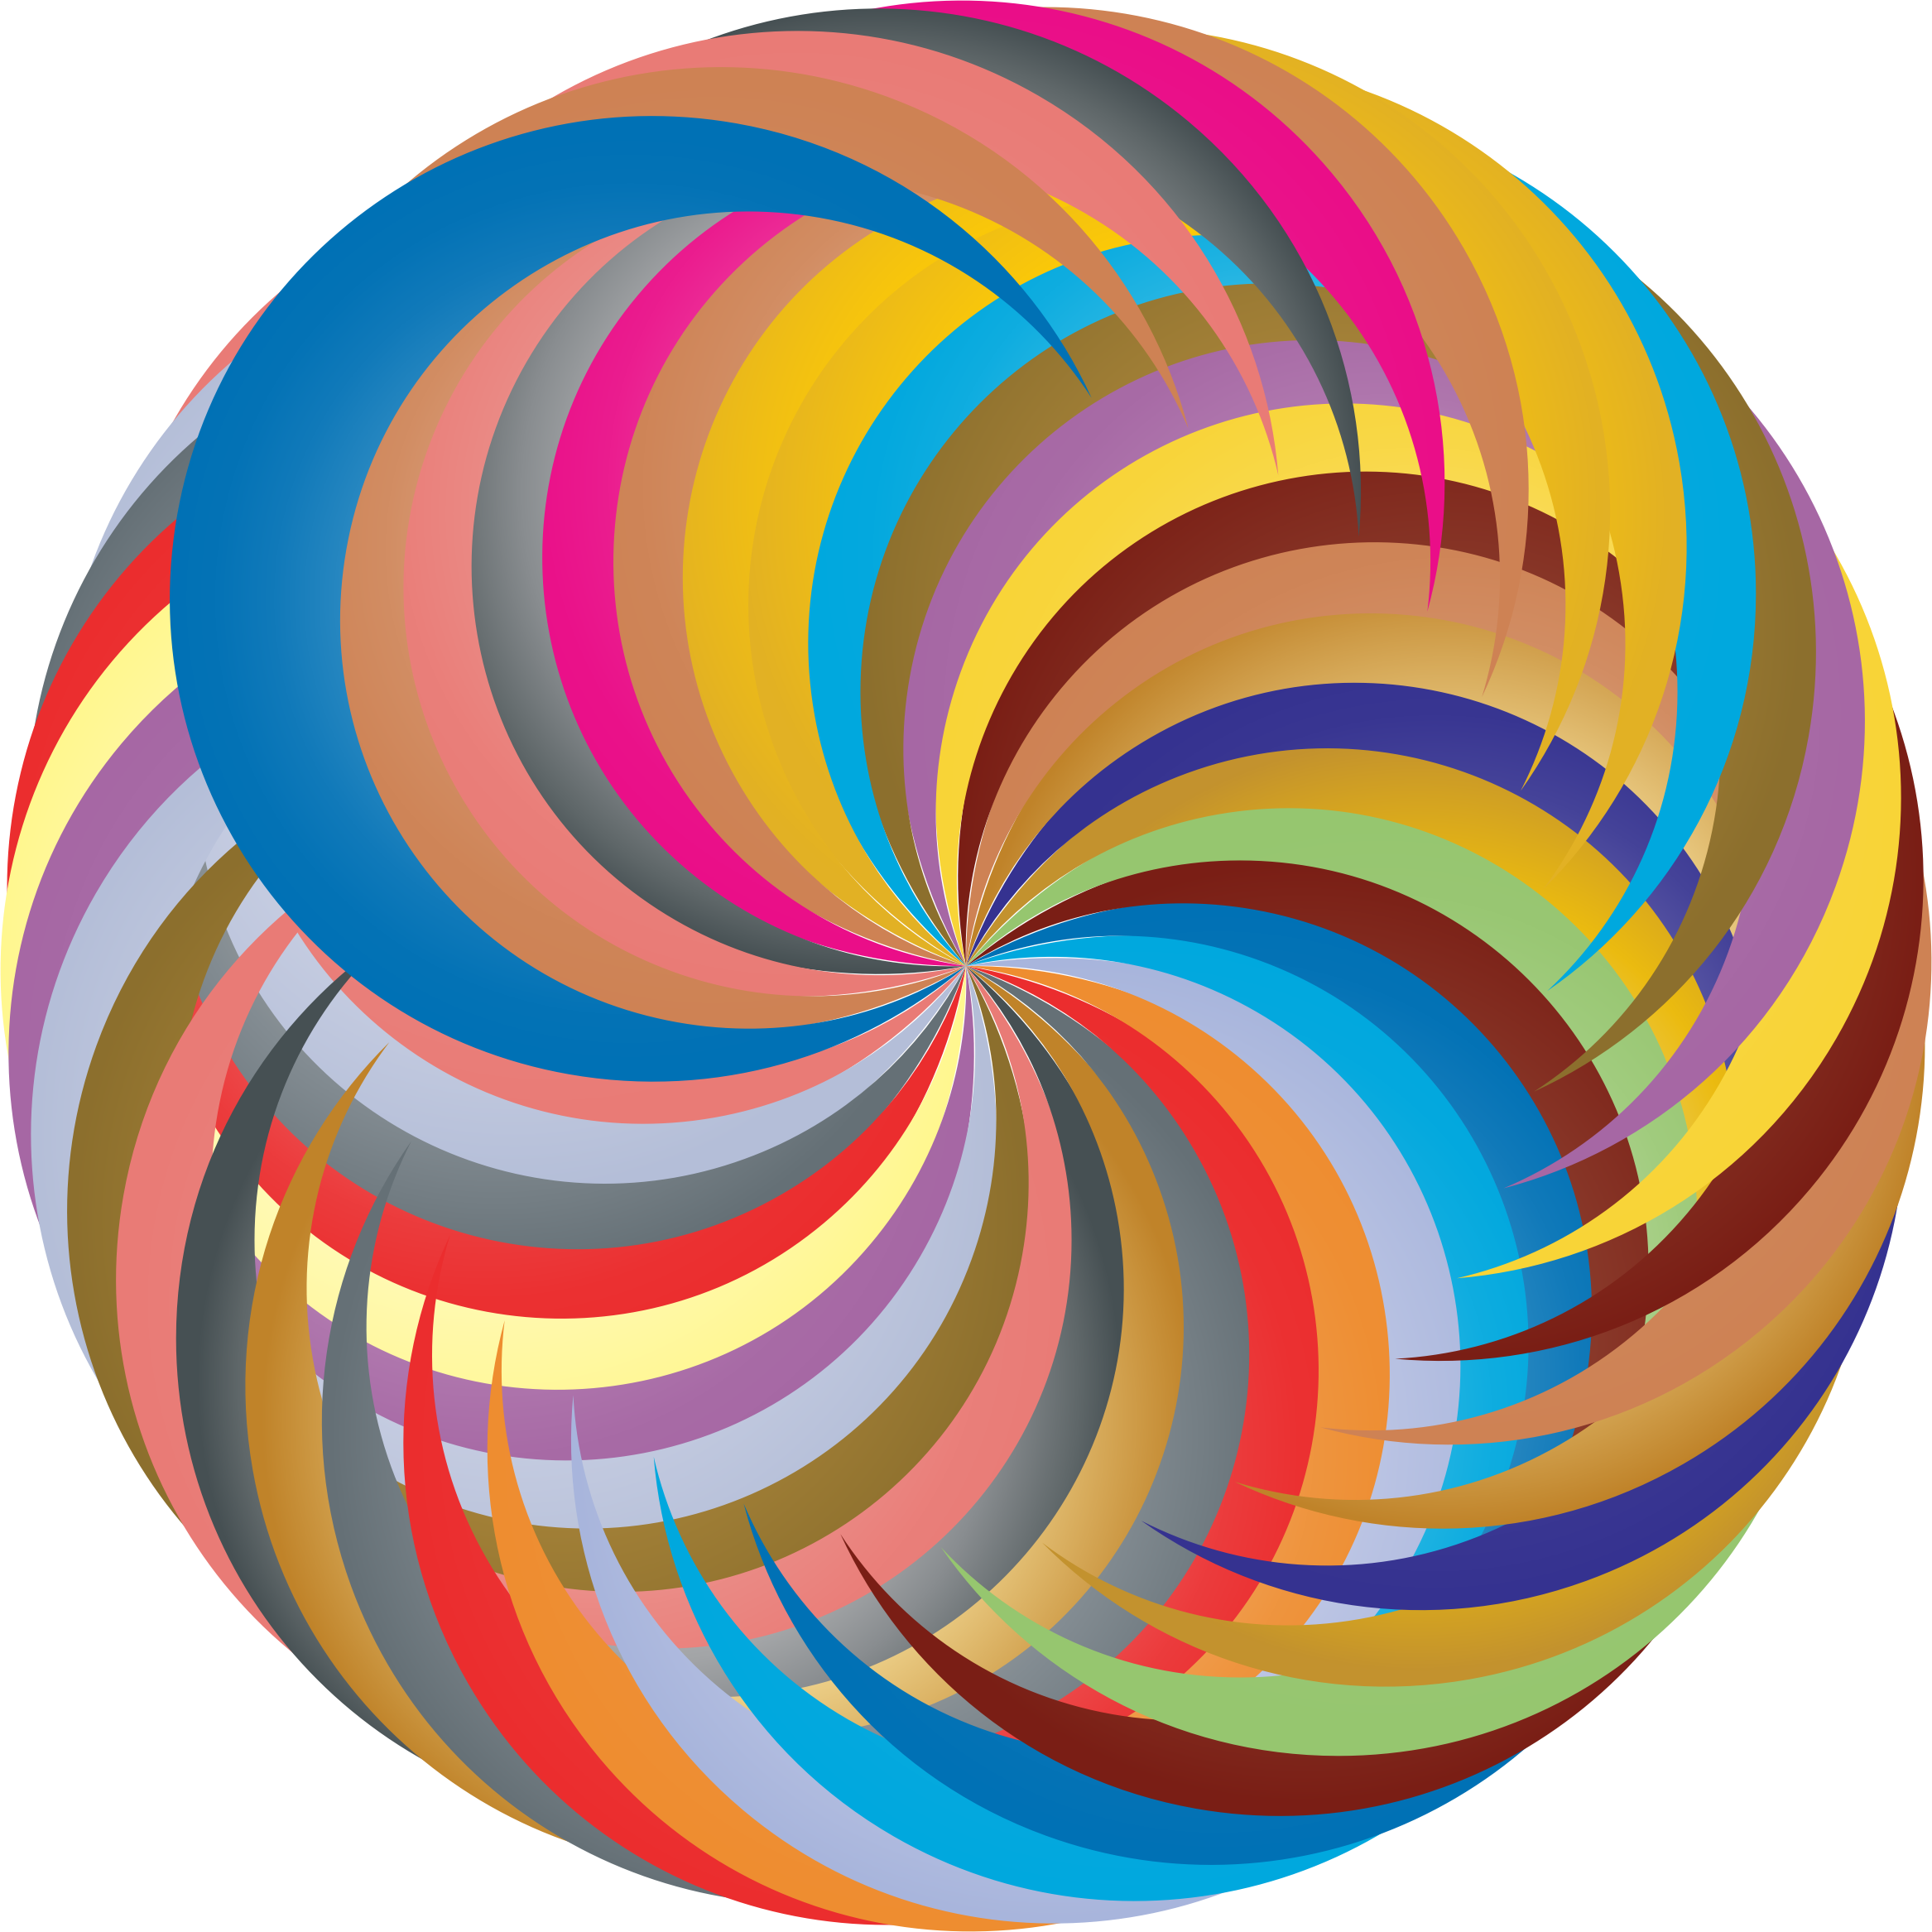 A Colorful Swirly Circle